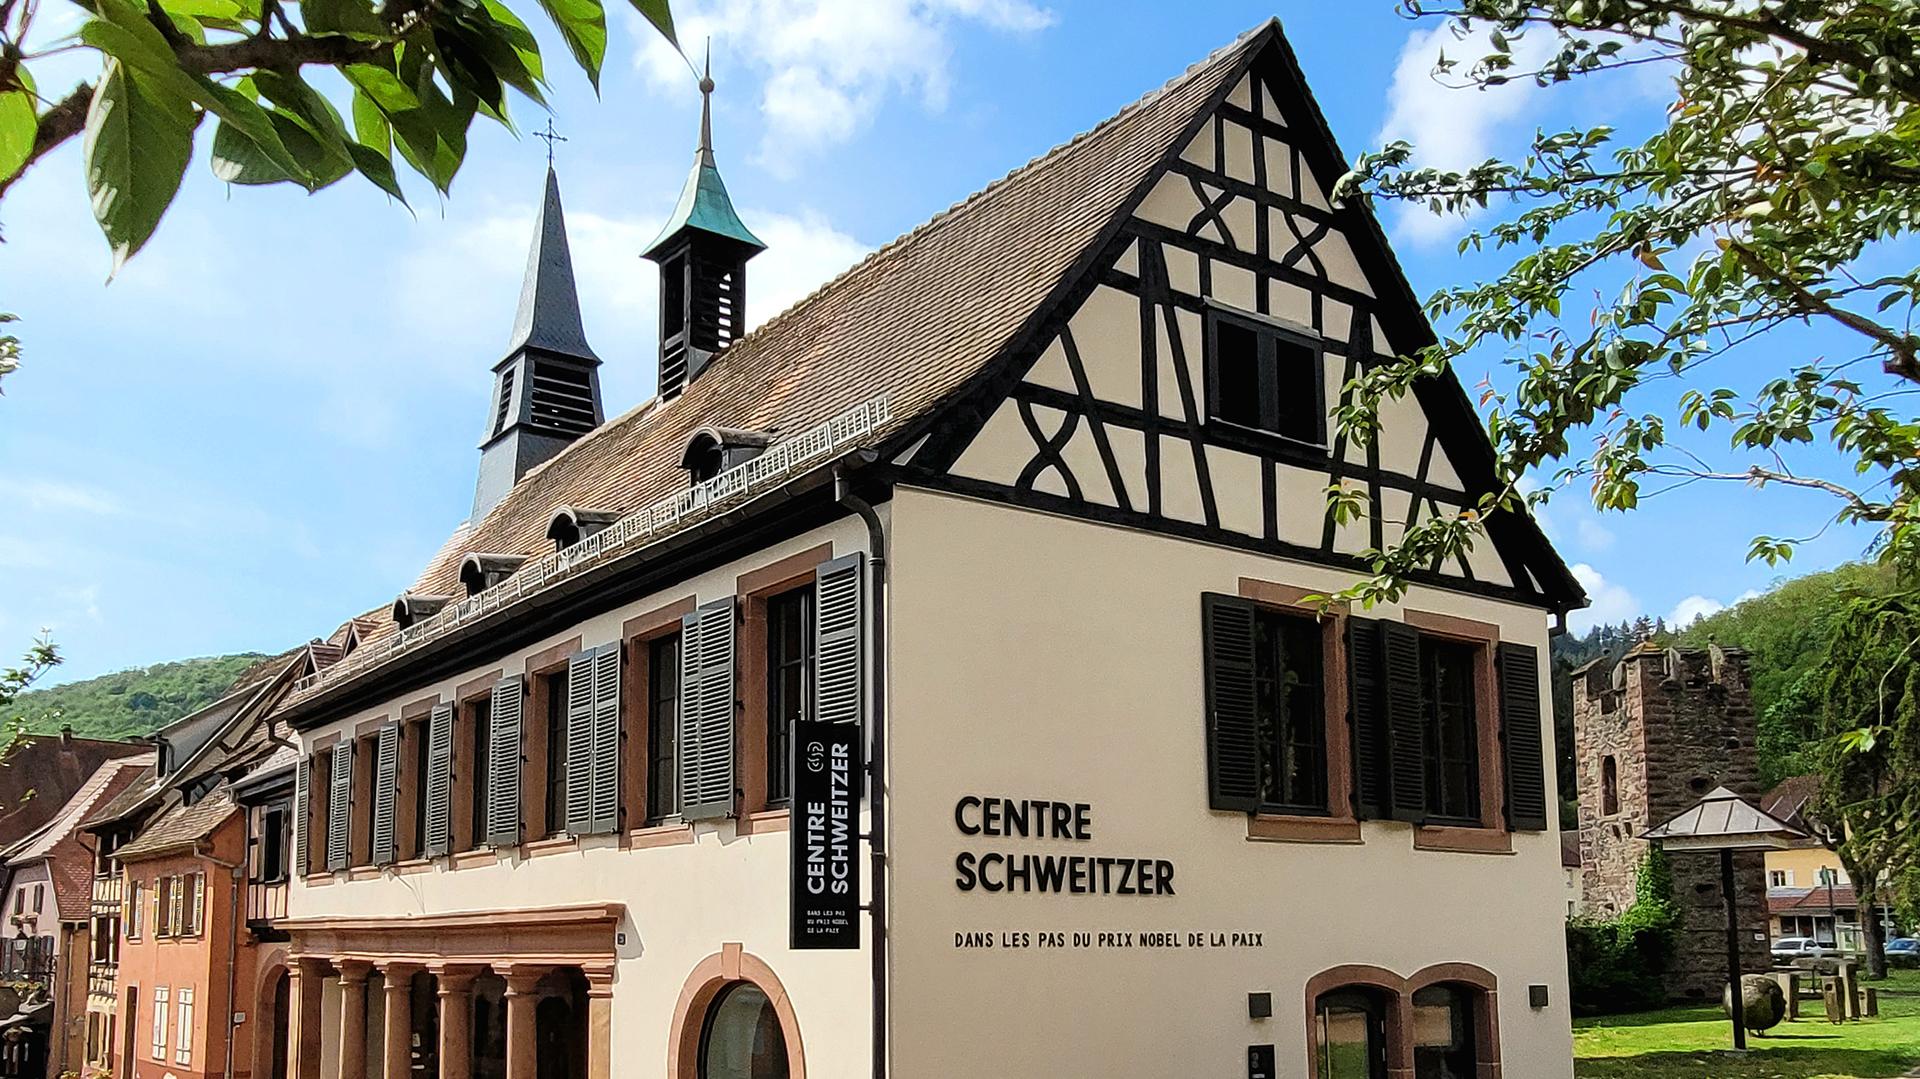 Centre Schweitzer